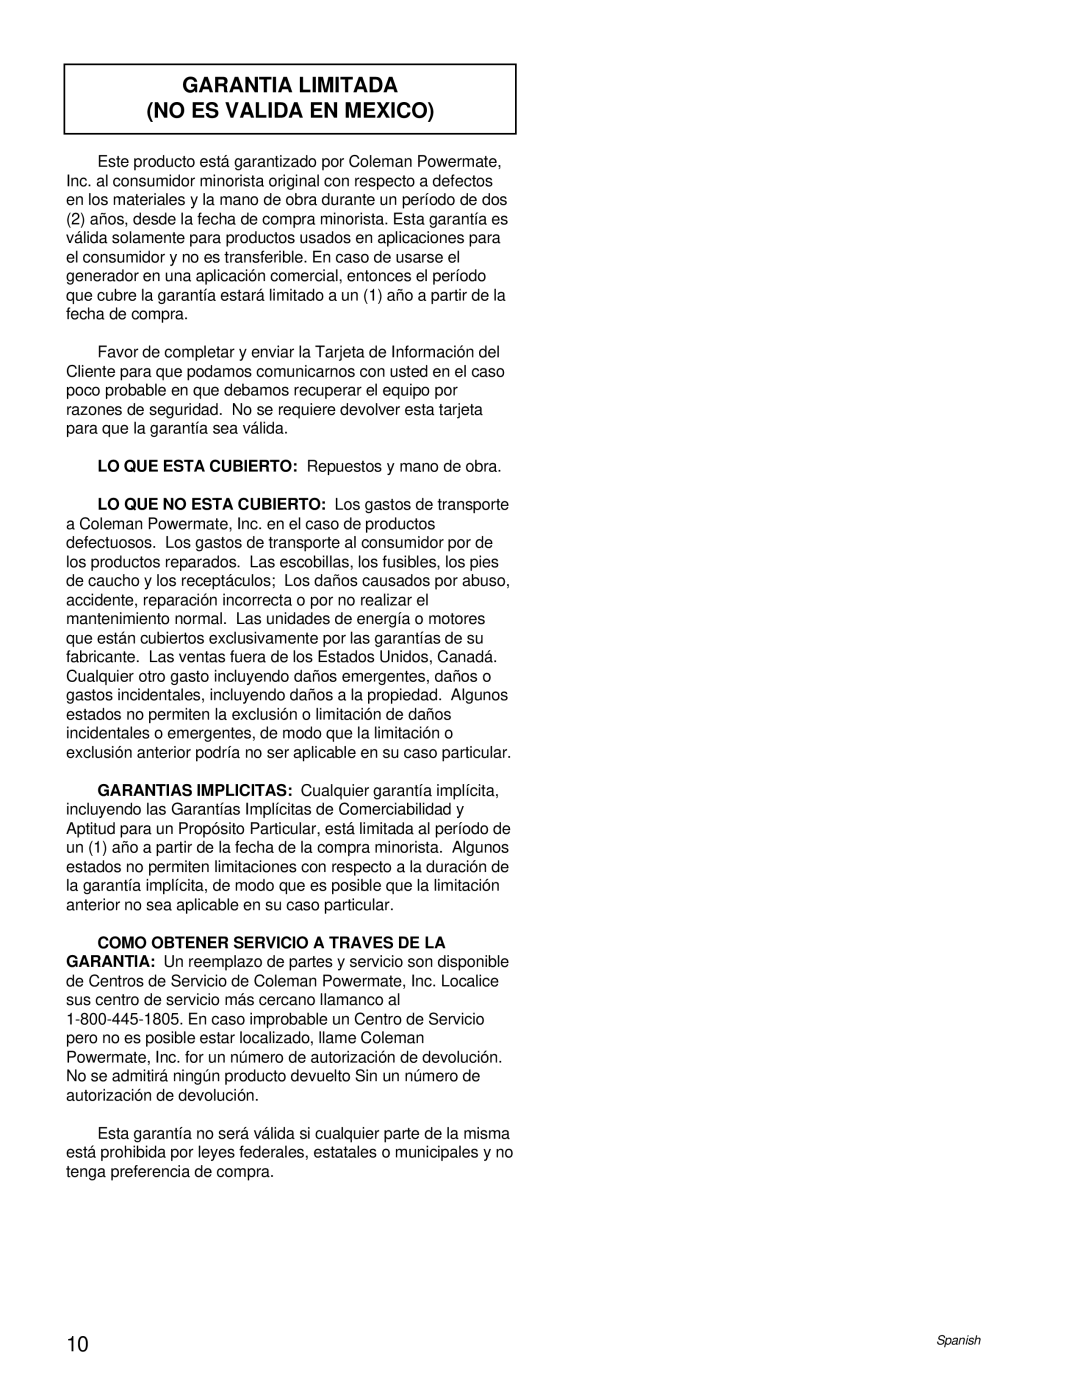 Powermate PC0496504.18 manual Garantia Limitada No Es Valida En Mexico 